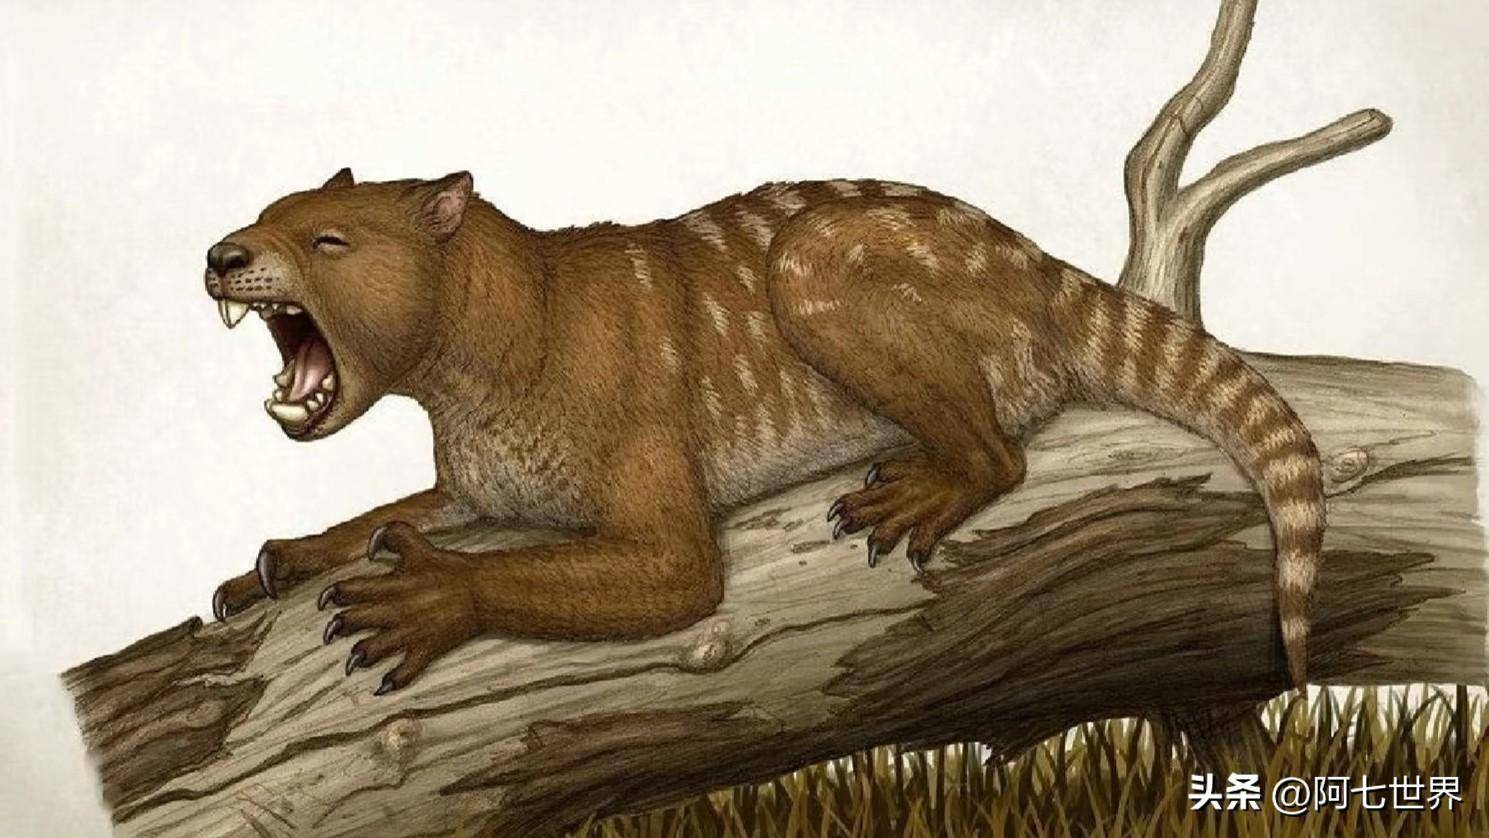 古巨蜥,是已知最大的蜥蜴,科学家怀疑还存在于澳洲内陆?